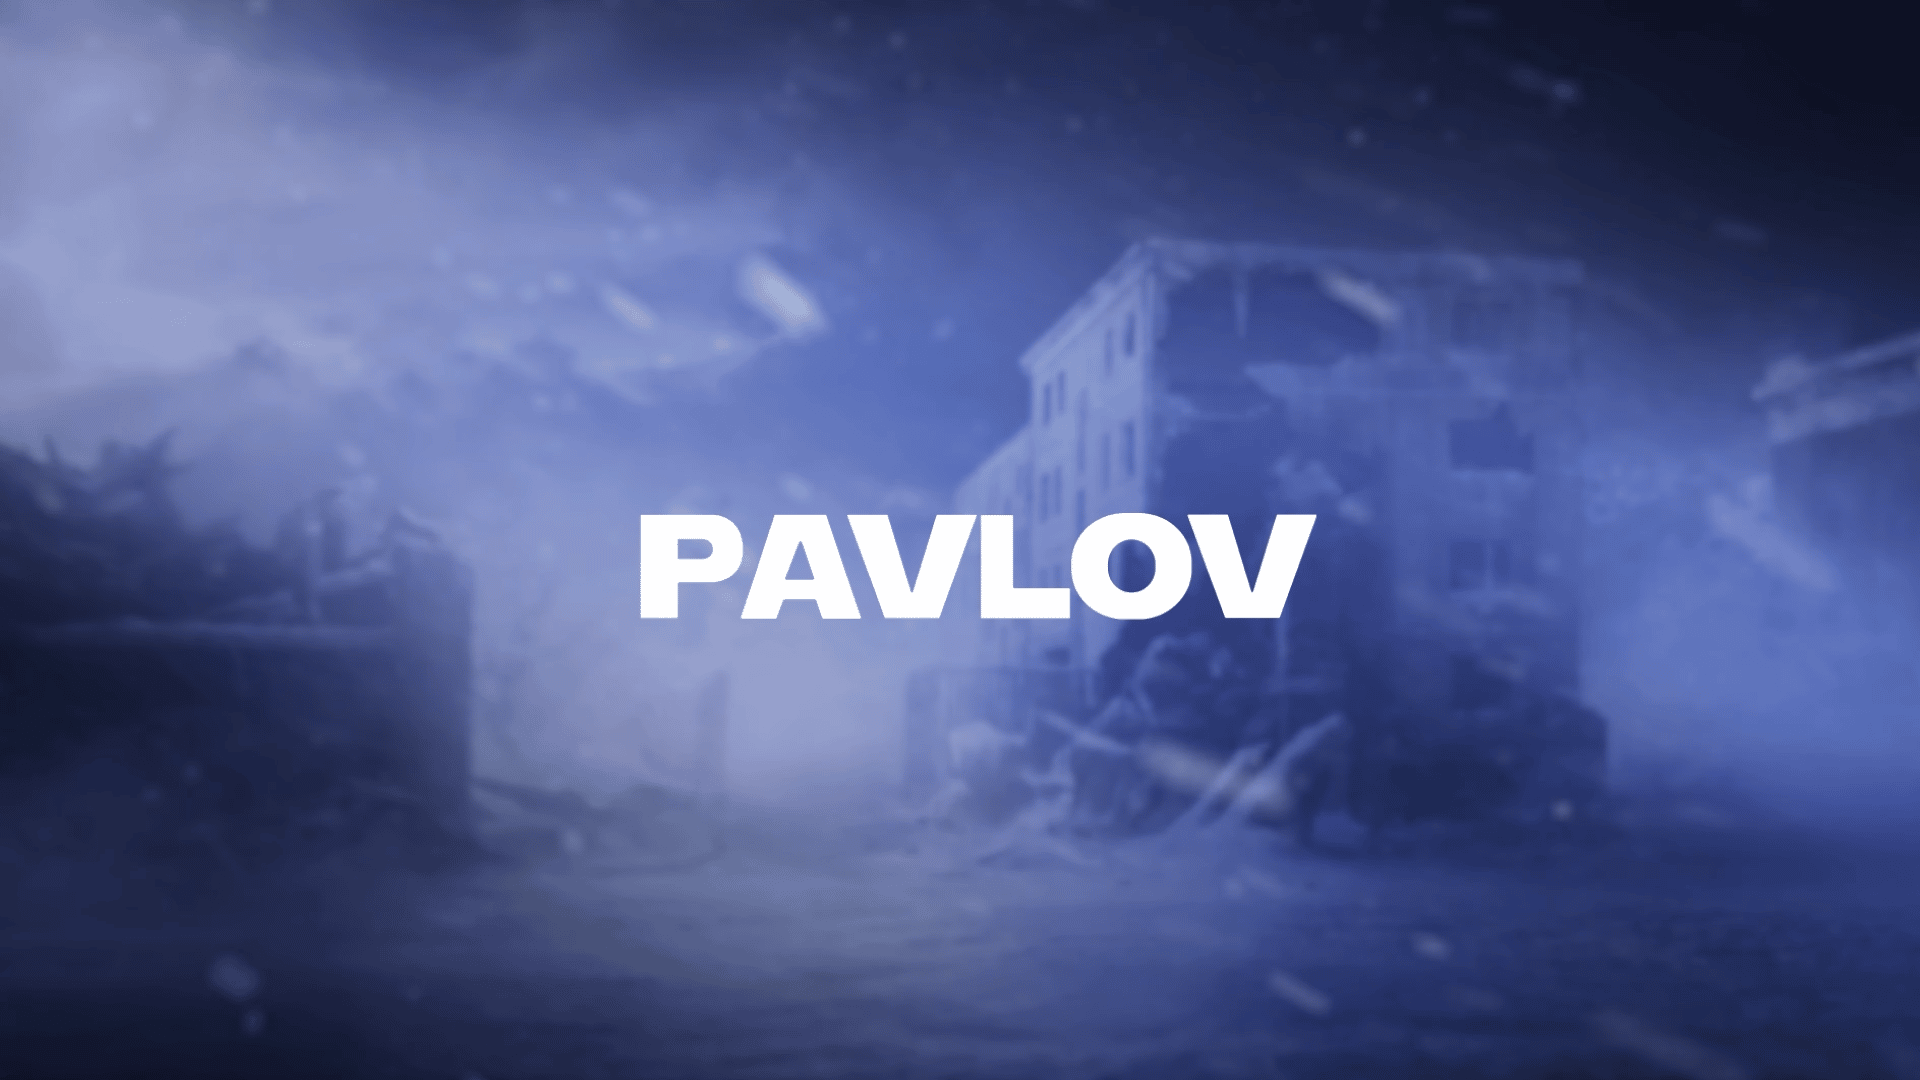 Pavlov confirmado para PSVR 2 como juego de lanzamiento